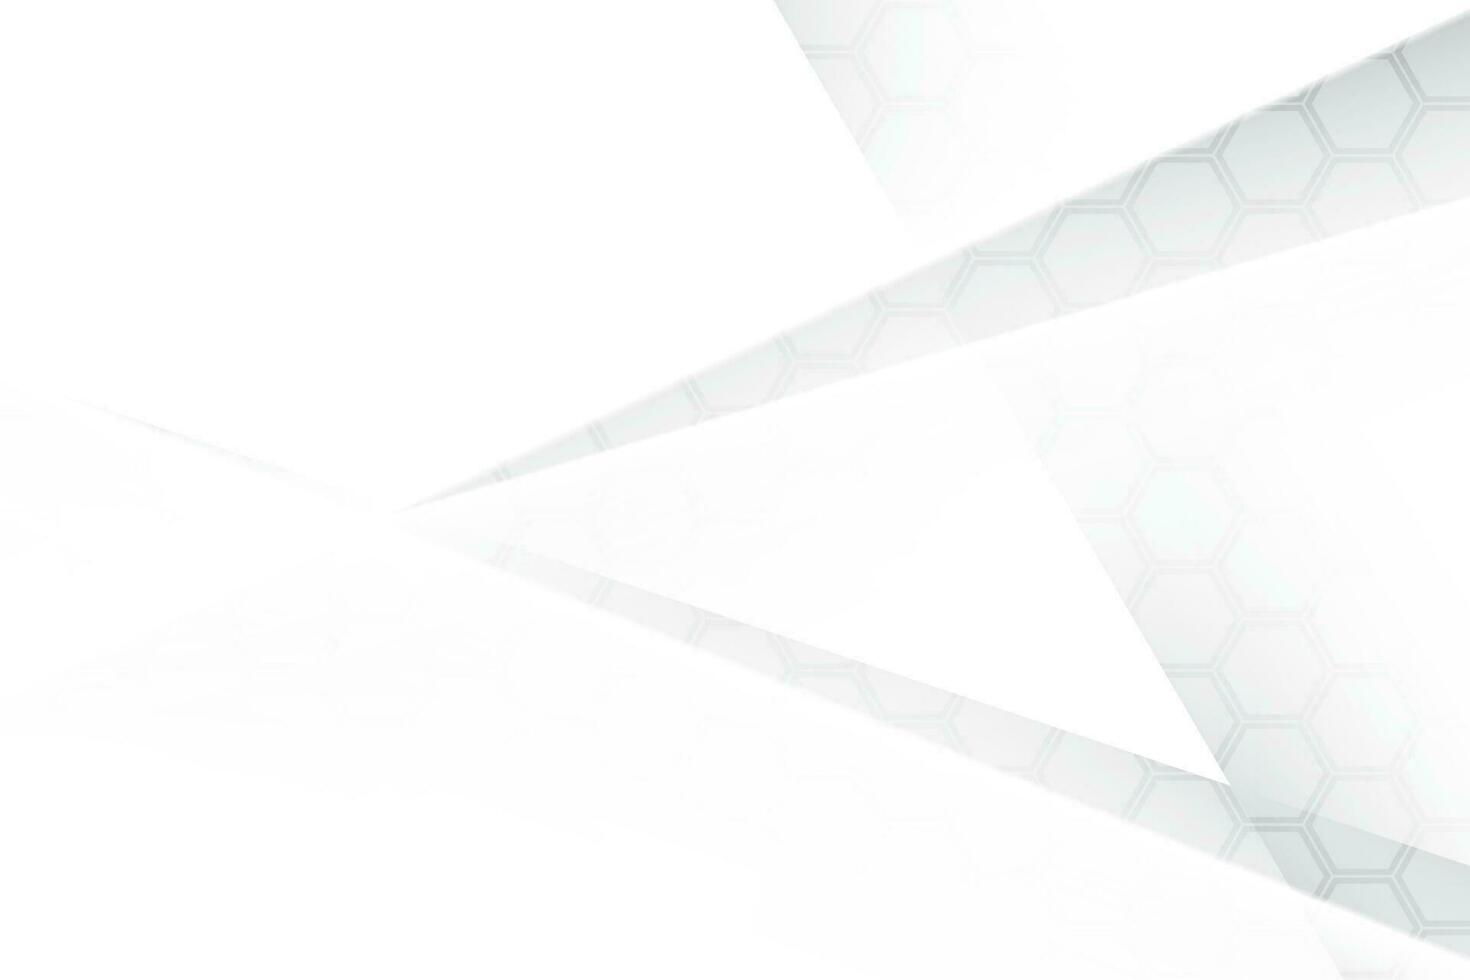 abstrakt vit och grå Färg, modern design bakgrund med geometrisk form och hexagonal mönster. vektor illustration.